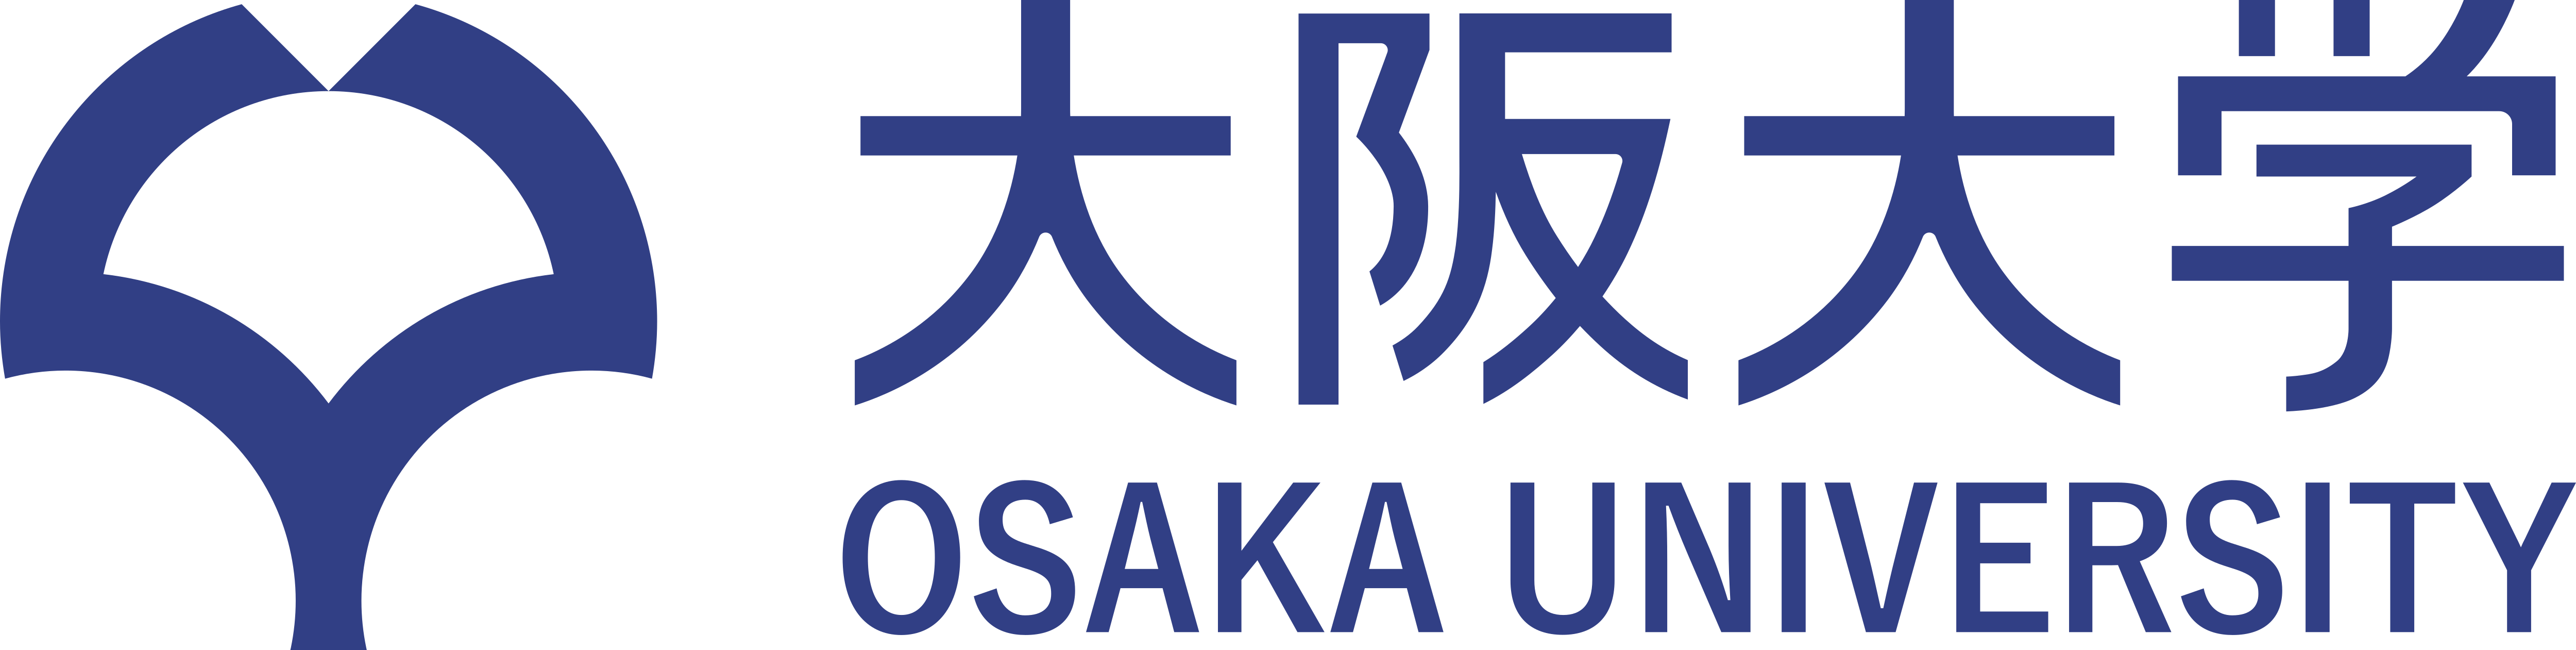 Osaka University – Logos Download